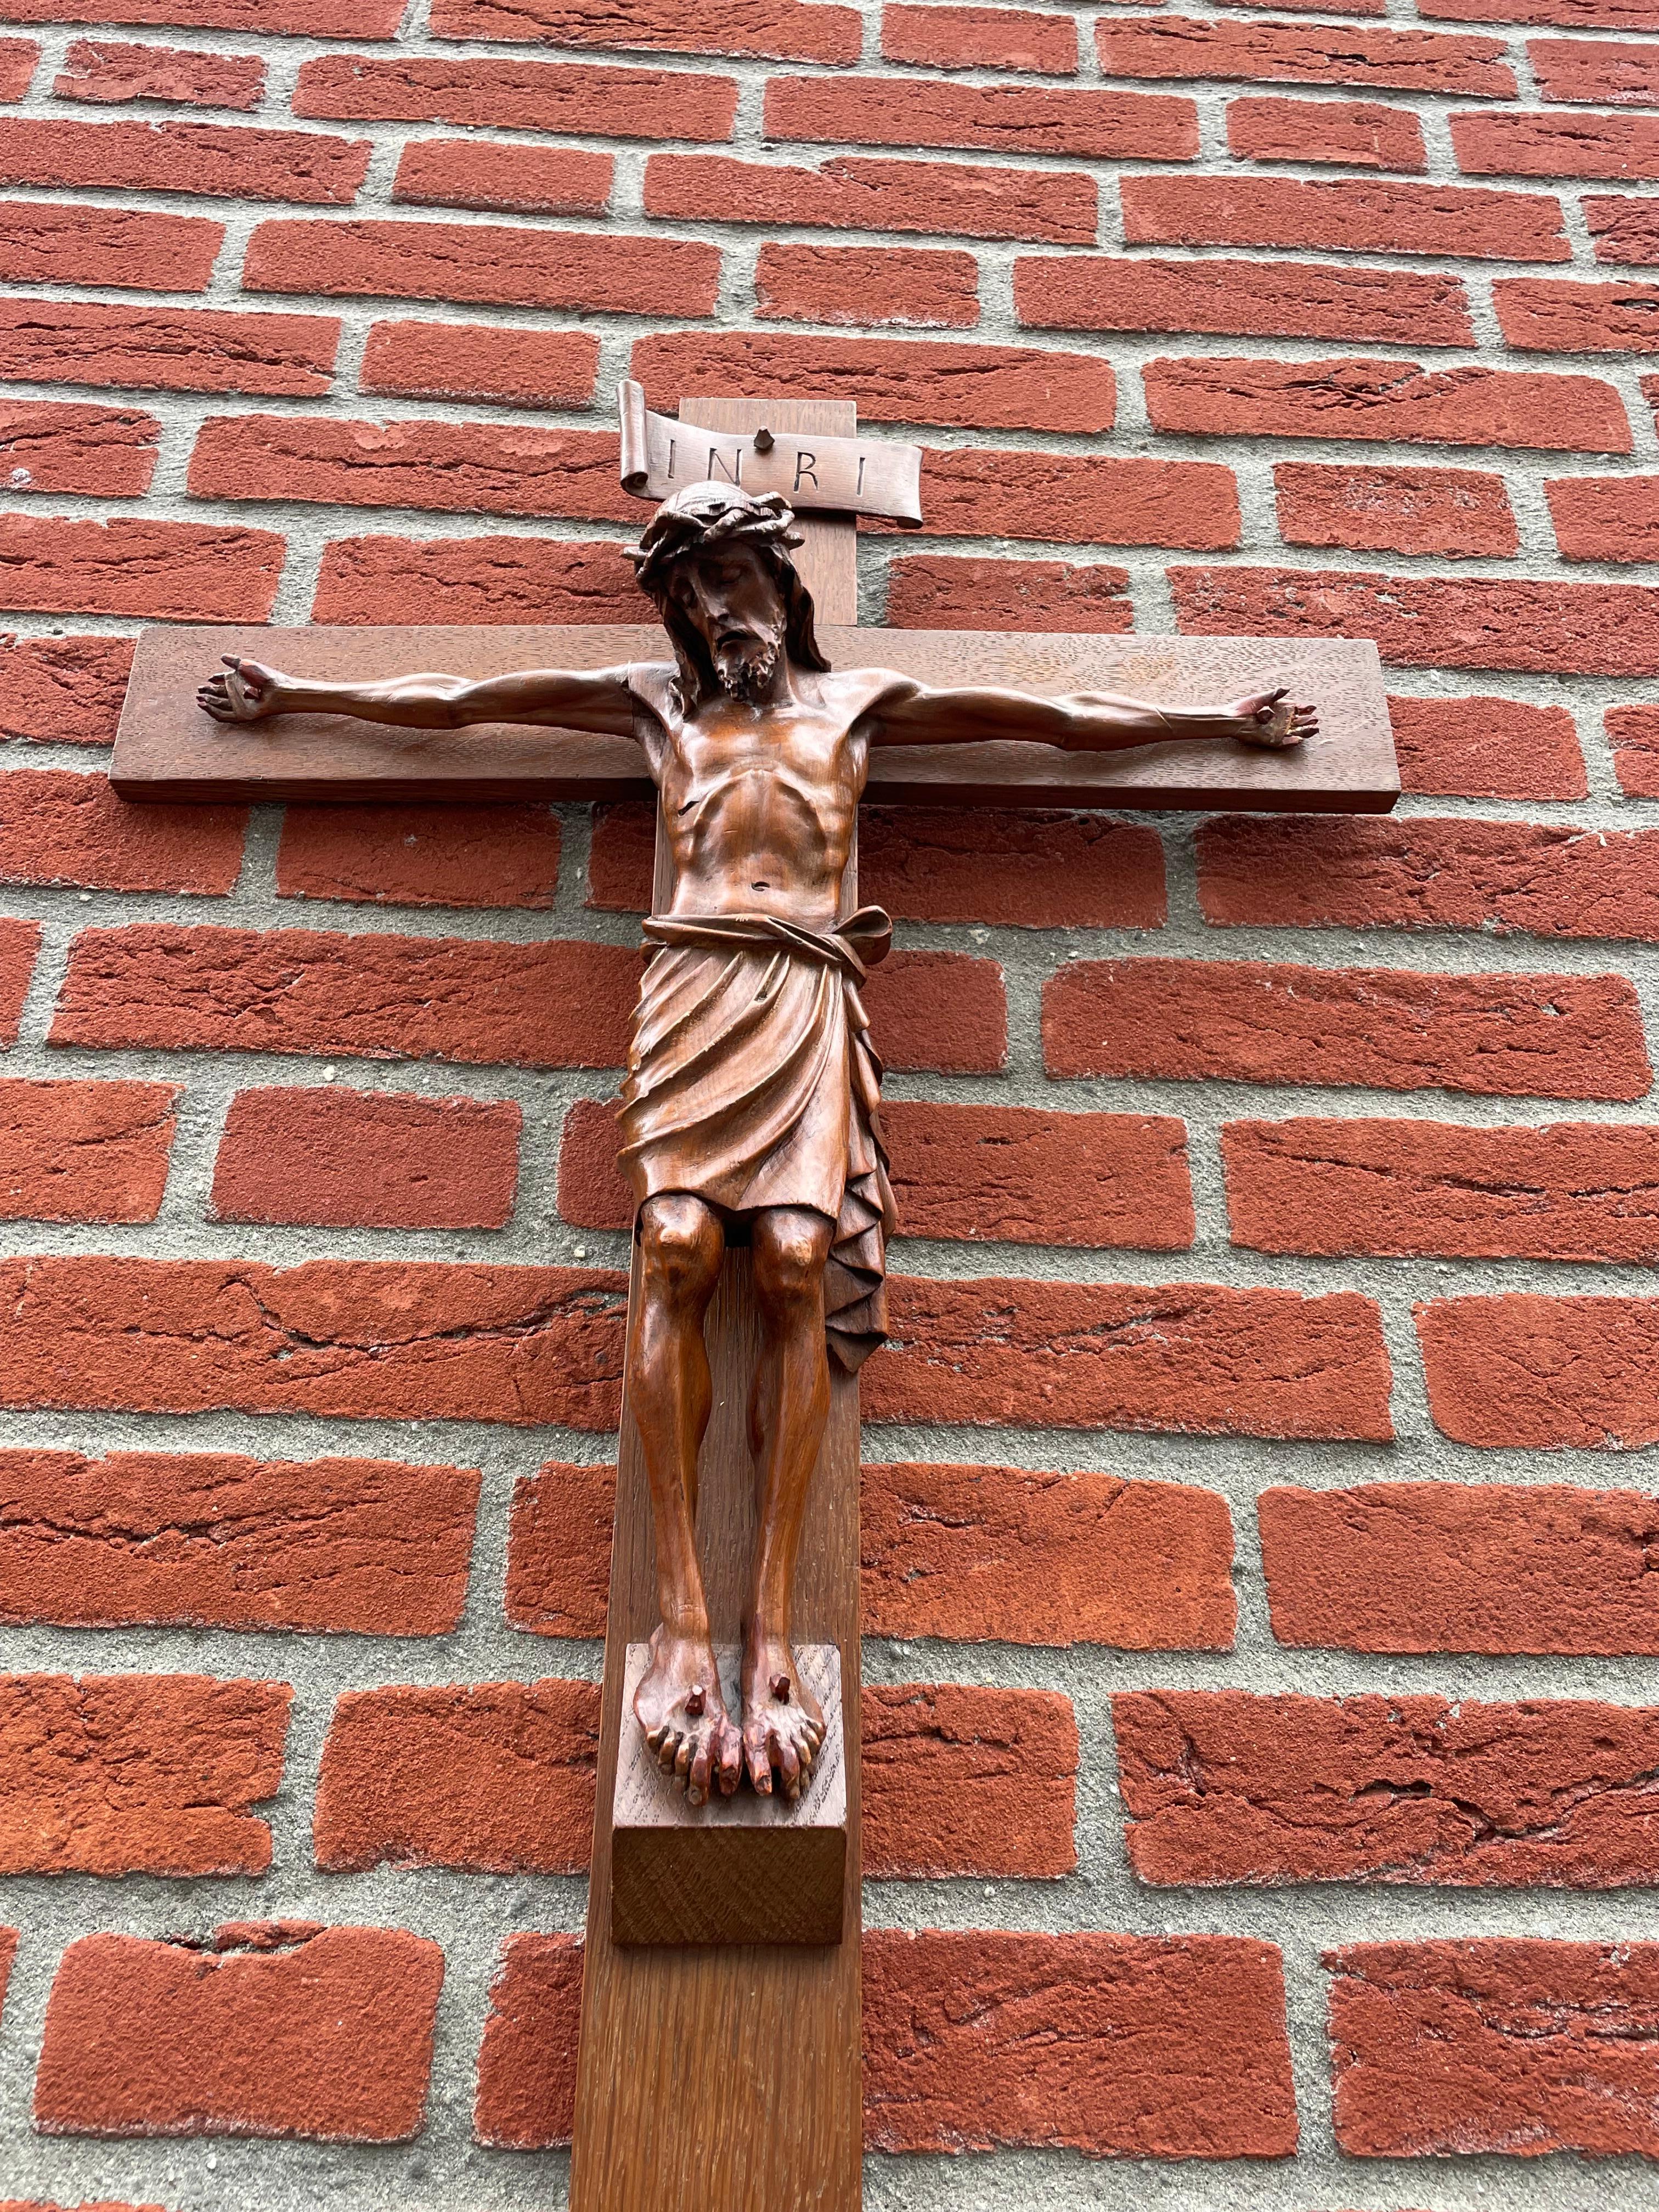 Großes Kruzifix mit einem feiner geschnitzten Christuskorpus.

Wenn wir Christus so betrachten und an die grausame Art und Weise denken, in der er sein irdisches Leben verlor, ist das Kruzifix (aus unserer Sicht) ein Symbol dafür, wozu es führen